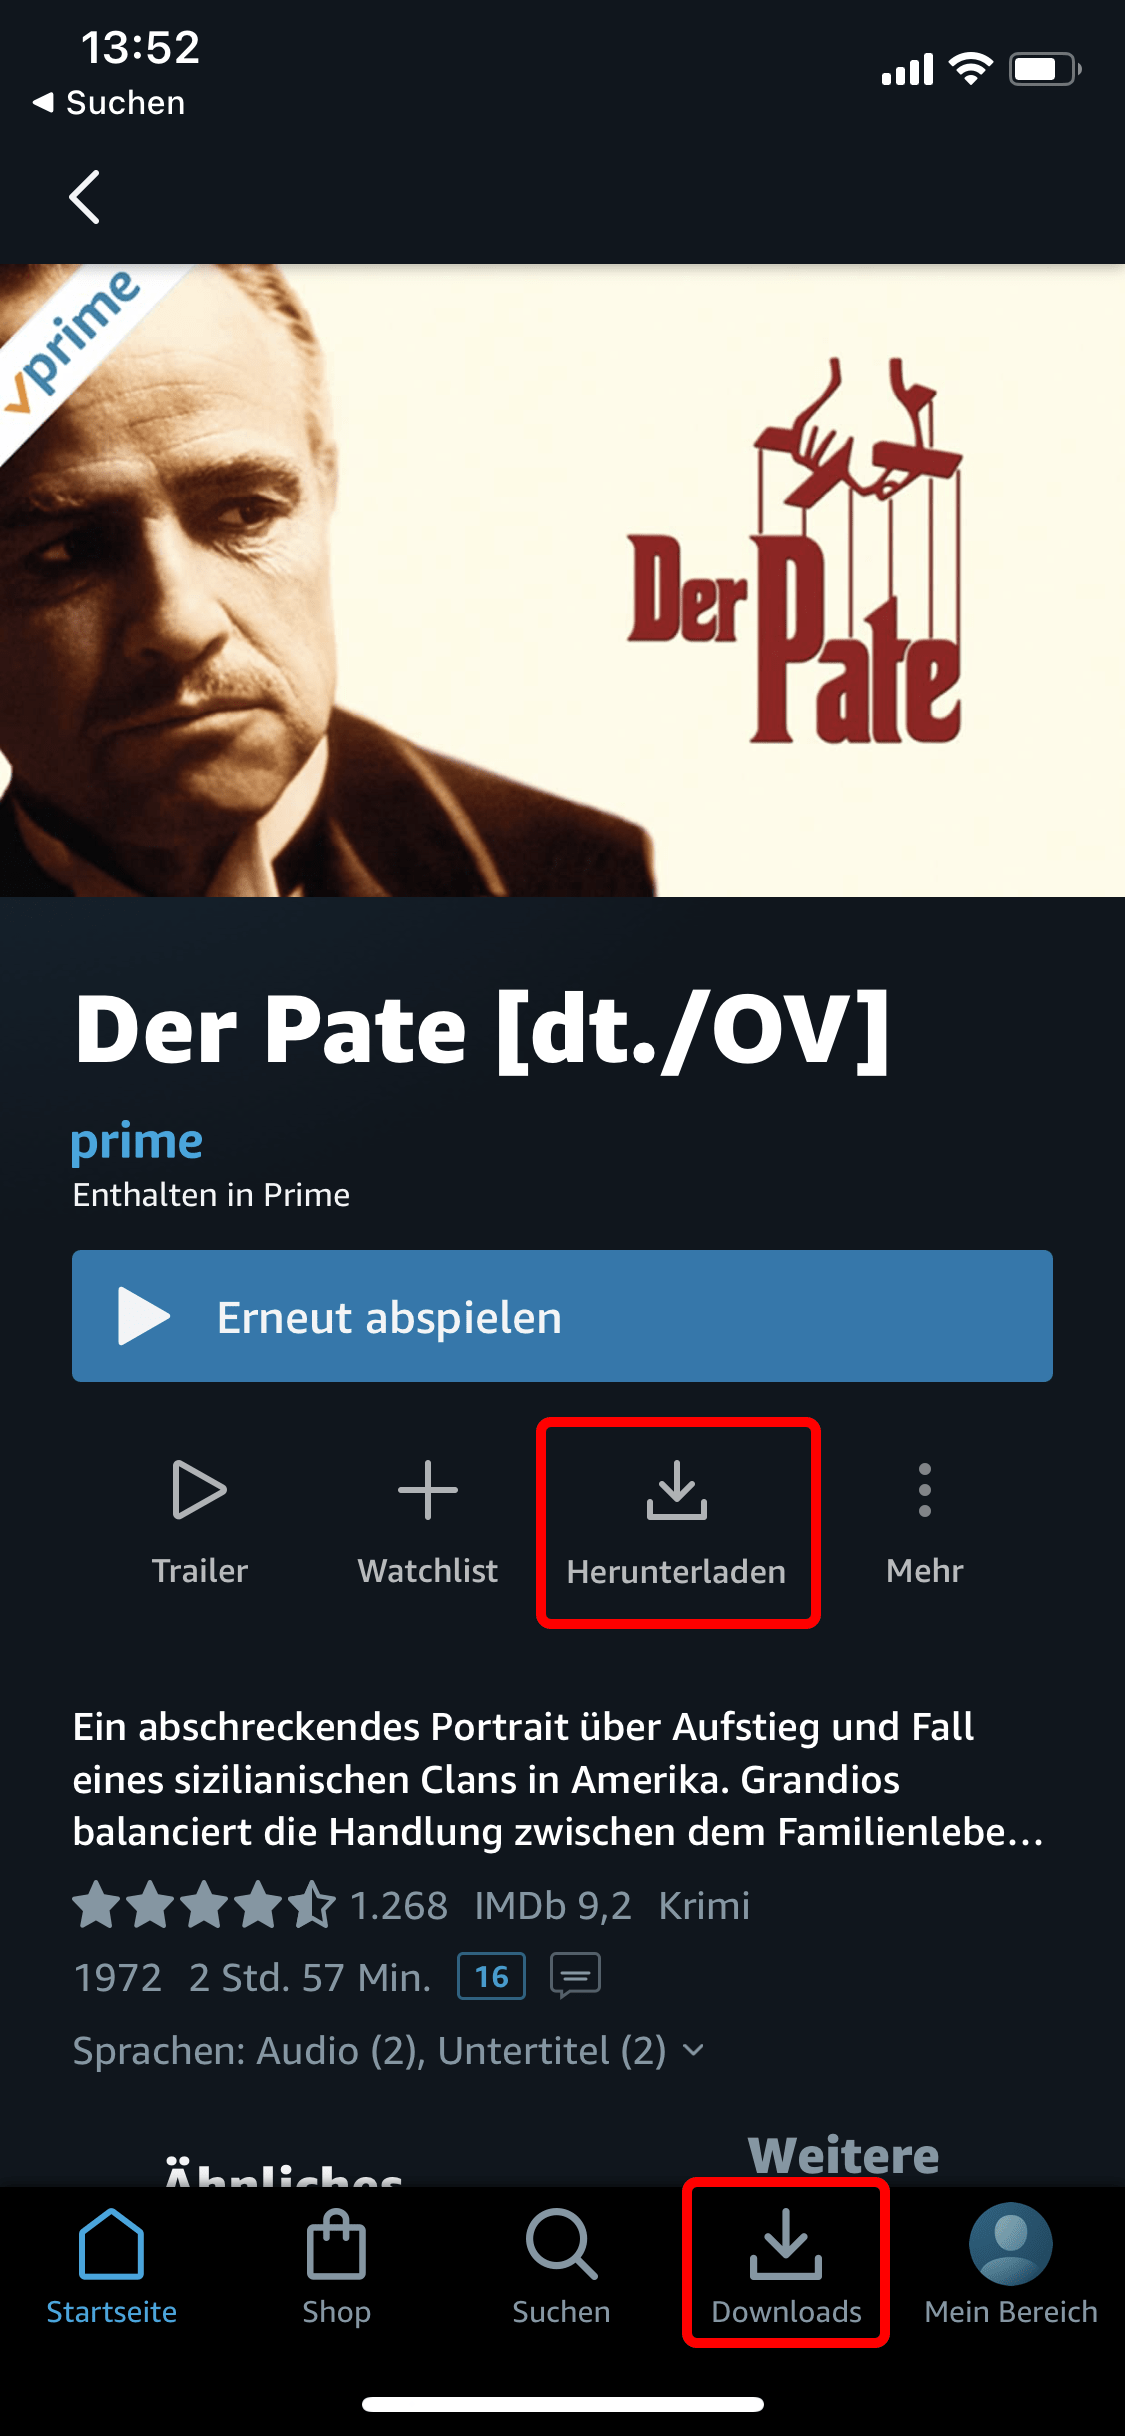 Amazon Prime: Wählen Sie eine Folge oder einen Film laden das Video herunter über "Herunterladen". Unter "Downloads" (unter Android auch "Meine Videos") ist es dann zu finden.